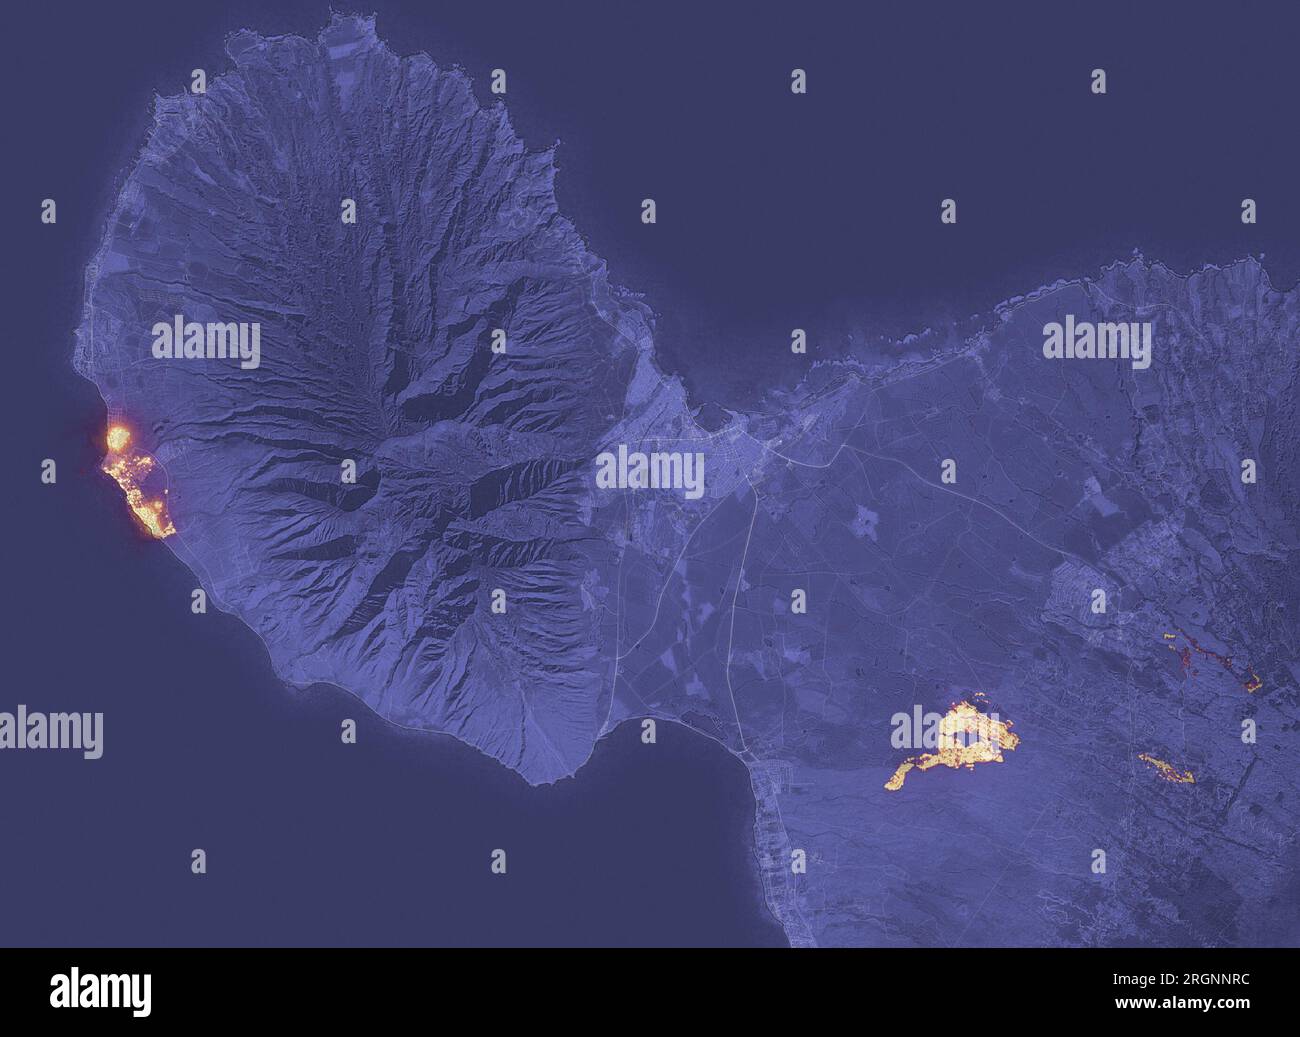 Maui, Hawaii, USA. 10 agosto 2023. Un rapido incendio ha devastato la storica città di Lahaina a Maui, la seconda isola più grande delle Hawaii. L'immagine qui sopra mostra la firma dell'incendio alle 22:25 ora locale dell'8 agosto 2023, come osservato dall'Operational Land Imager (oli) sul satellite Landsat 8. Gran parte di Lahaina, una città con una popolazione residente di quasi 13.000 persone, sembrava essere in fiamme al momento dell'immagine. Un altro grande incendio bruciò a nord-ovest di Kihei. L'immagine è stata composta dalle osservazioni oli della luce infrarossa a onde corte (banda 6). Le osservazioni a infrarossi sono usefu Foto Stock